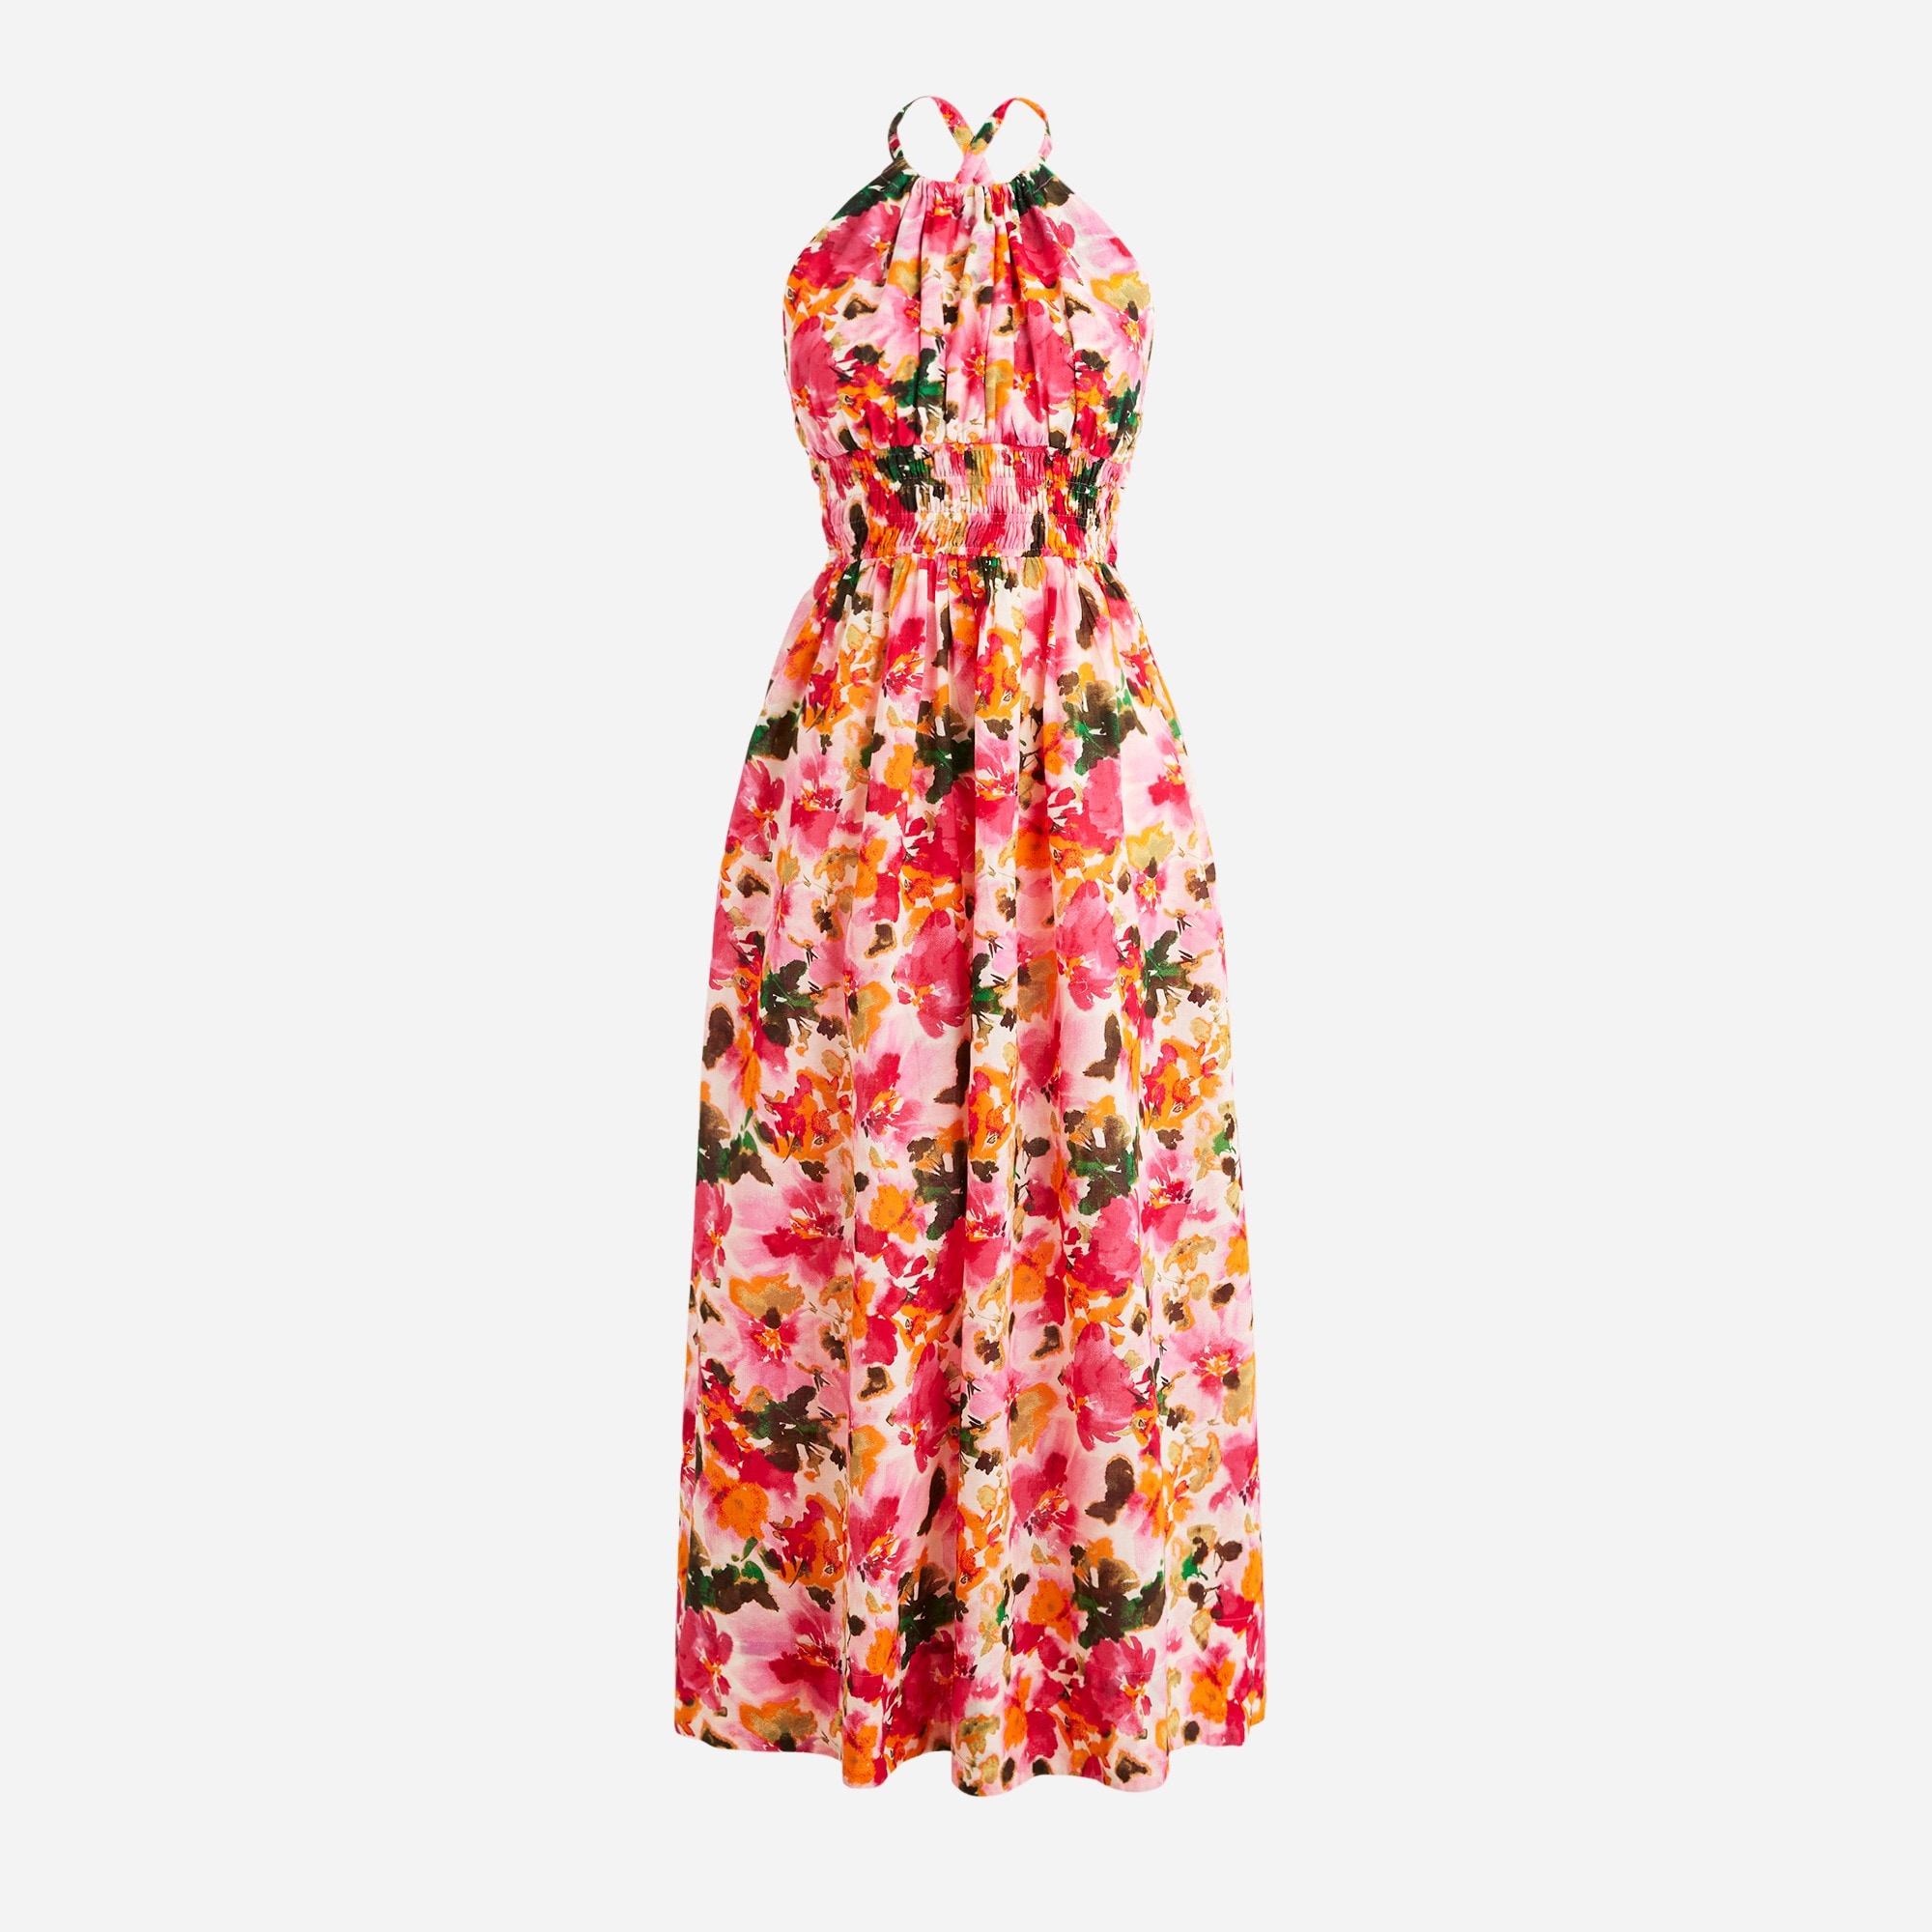  Halter-neck cross-back dress in floral cotton voile